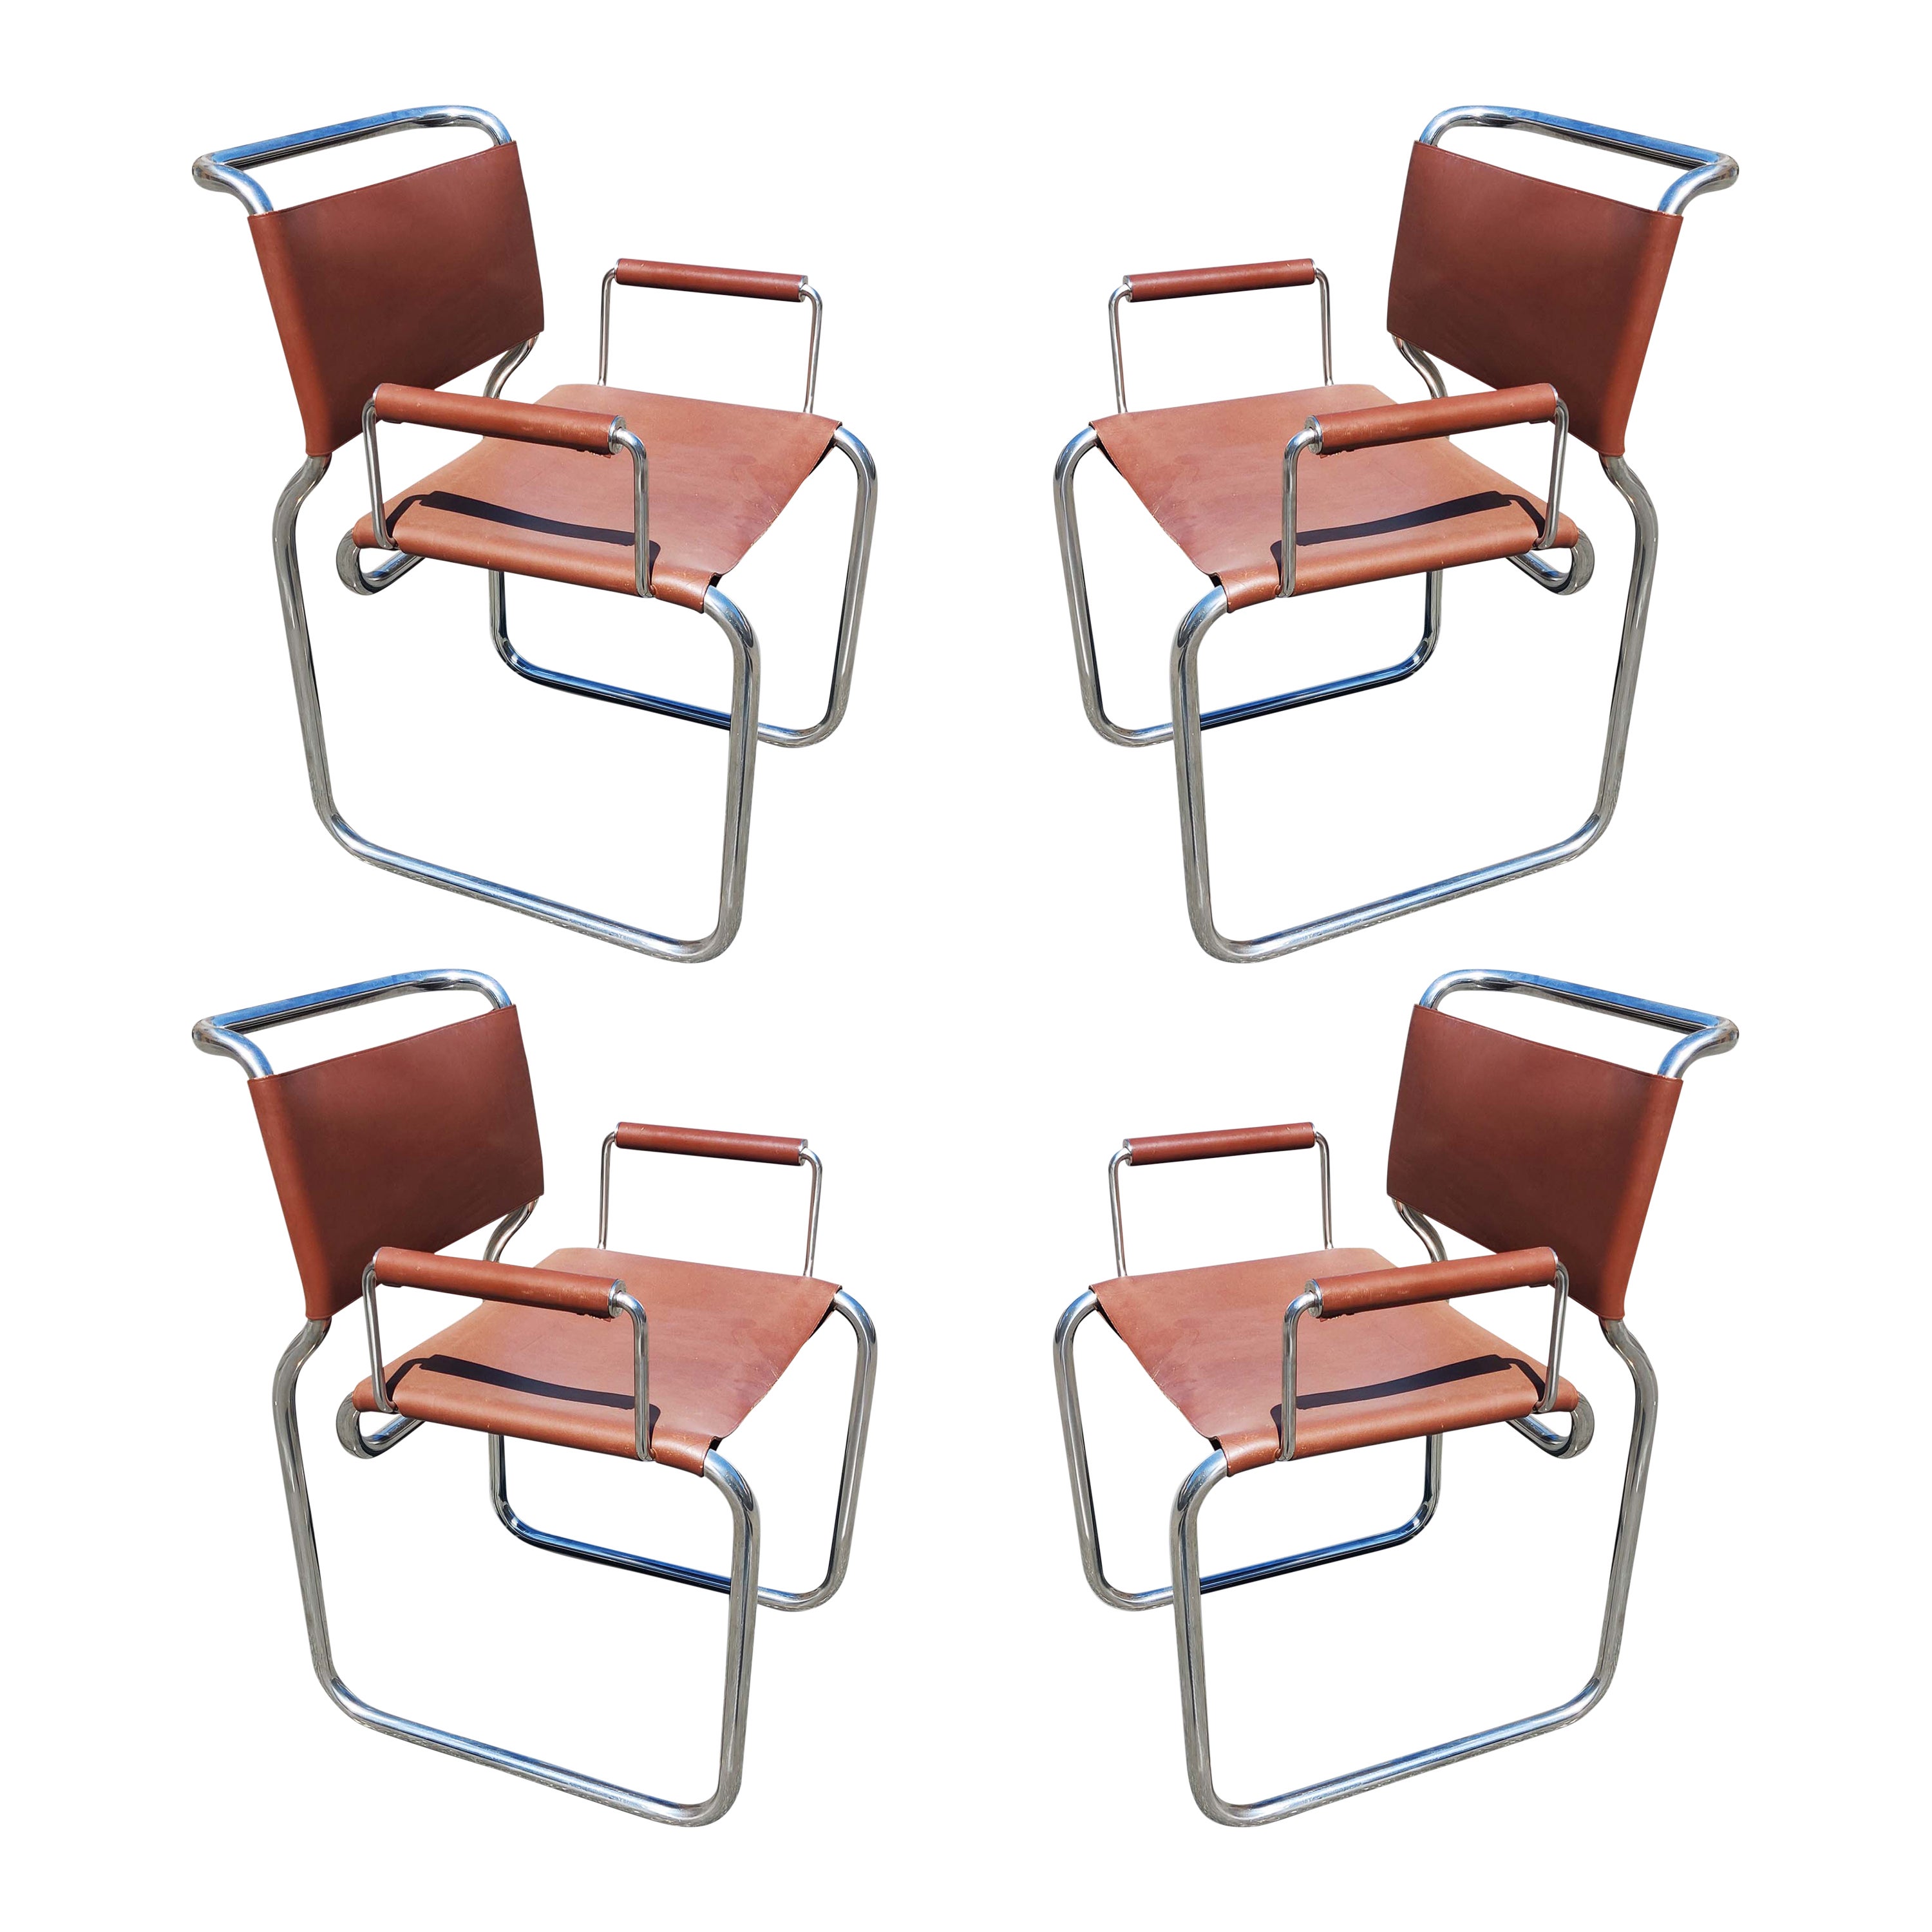 Nicos Zographos ensemble de 4 fauteuils de salle à manger rares en acier inoxydable et cuir